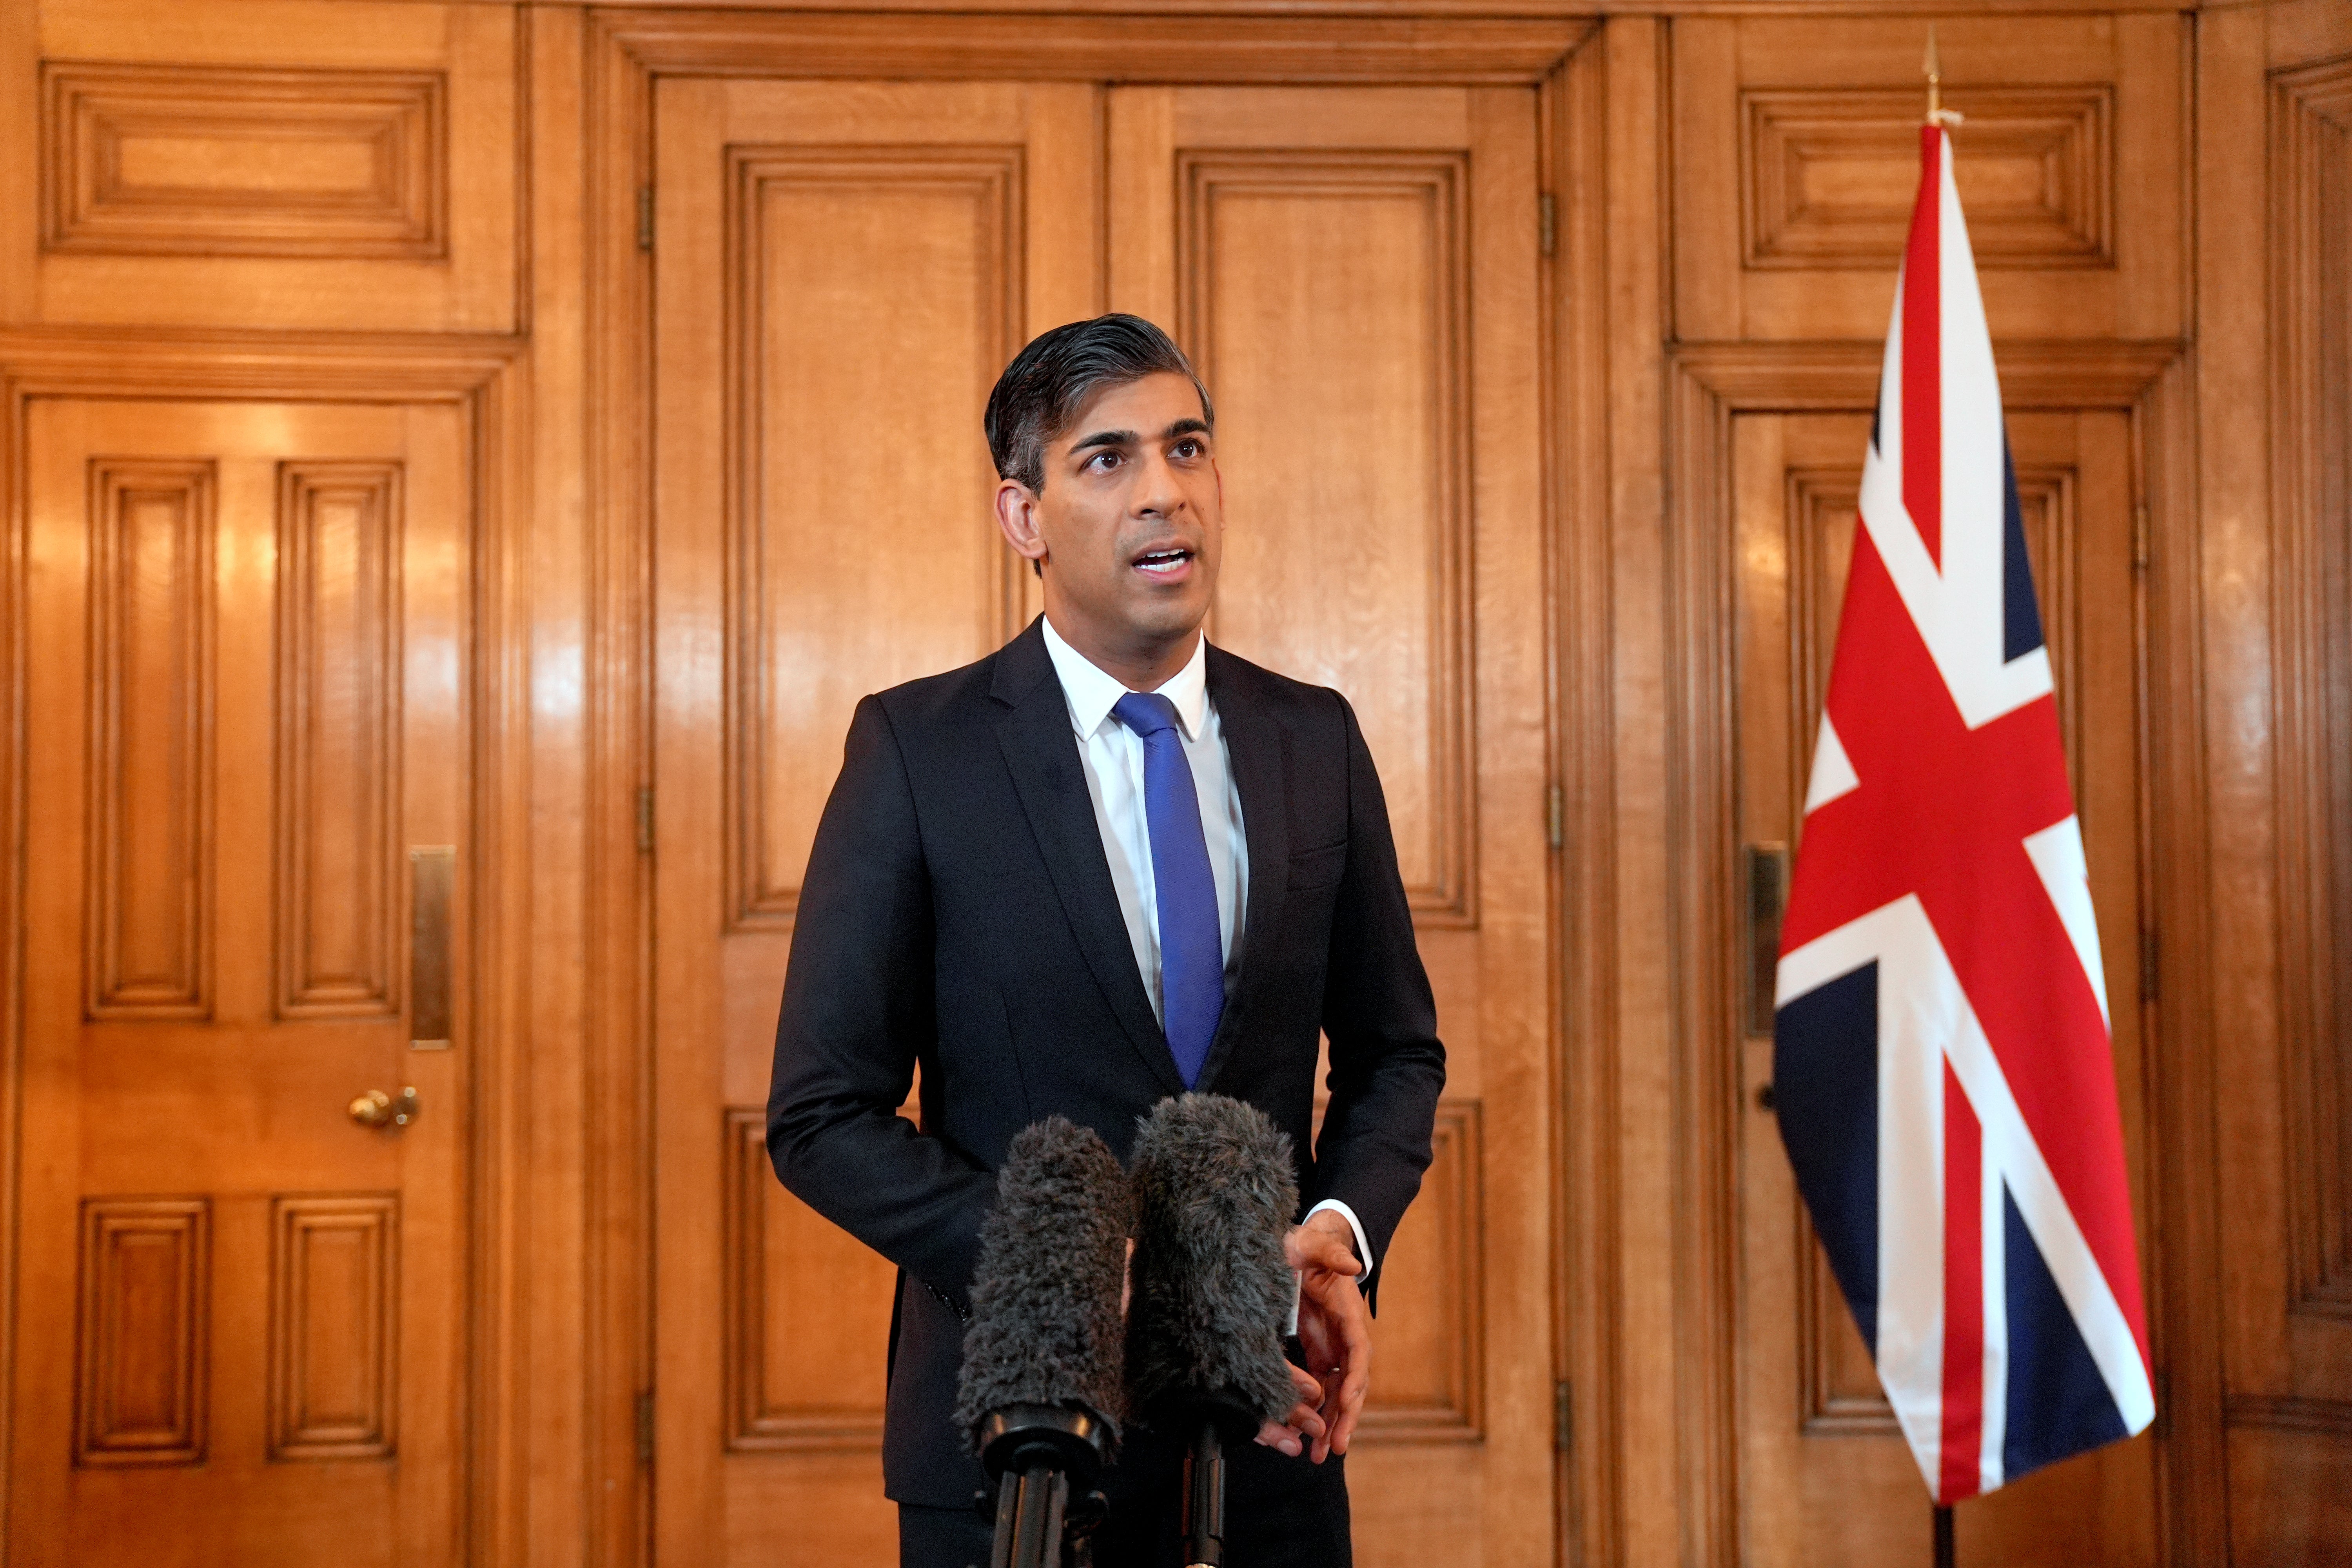 Rishi Sunak said the UK ‘will not hesitate’ to protect British interests